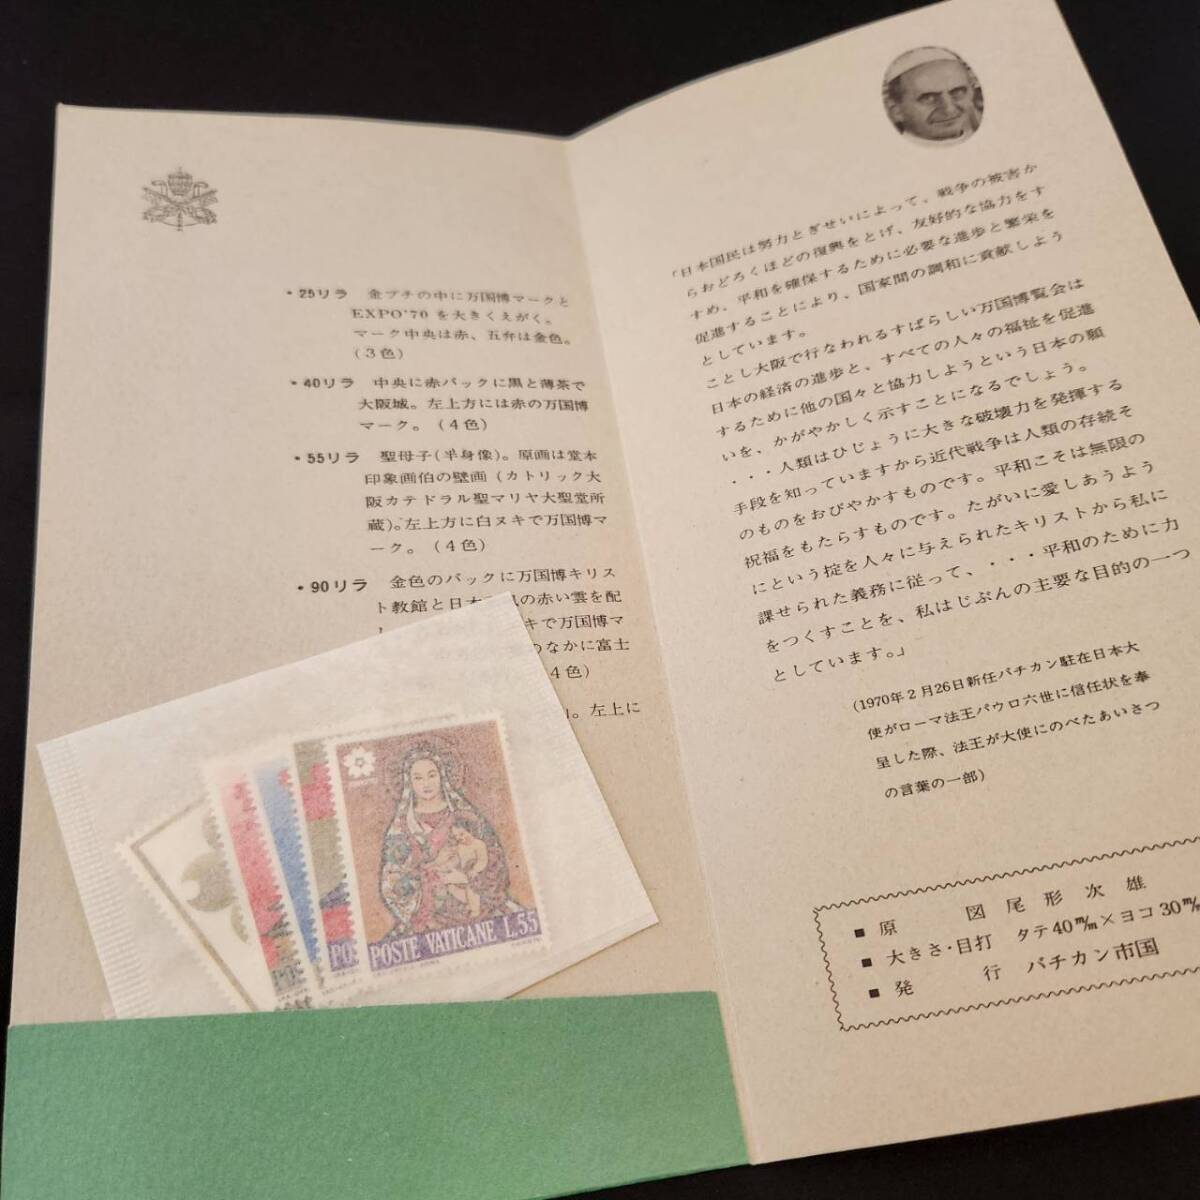 昭和レトロ EXPO’70 エキスポ 大阪万博 パンフレット 未使用切手 国内切手 バチカン市国 記念切手 いろいろまとめて_画像3